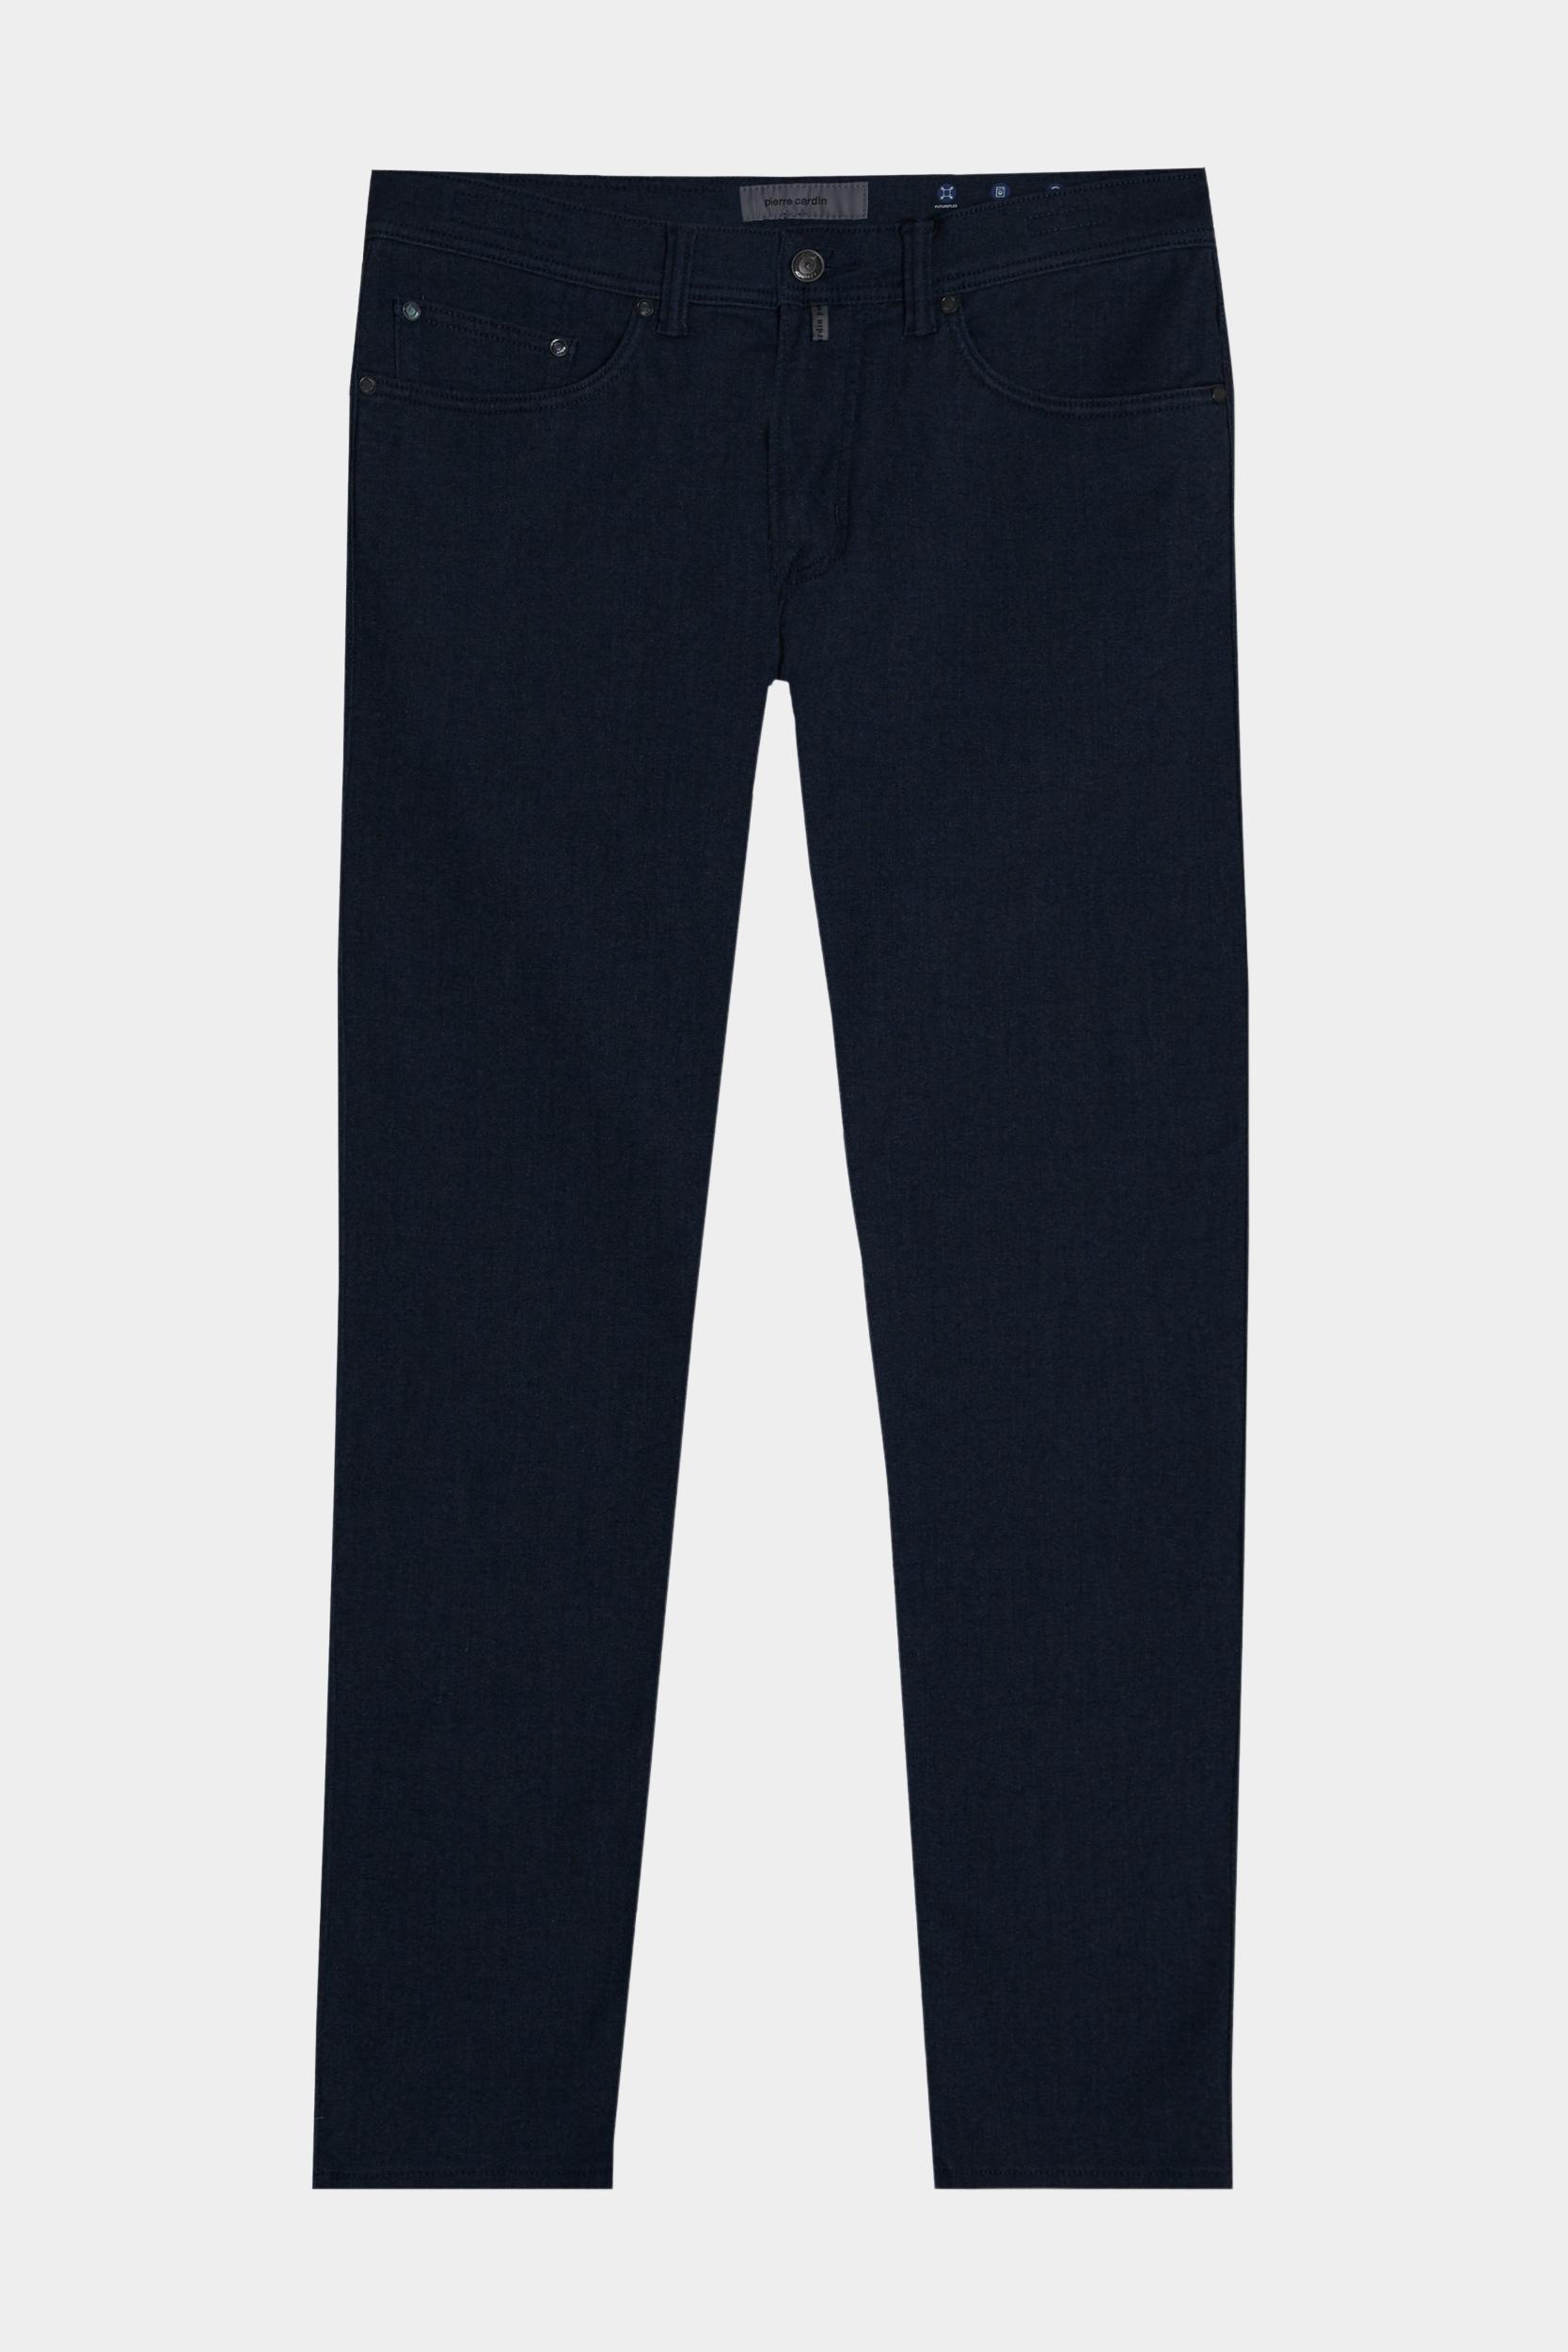 Pierre Cardin 5-Pocket Jeans kleur toevoegen  C3 30070.1038/6000